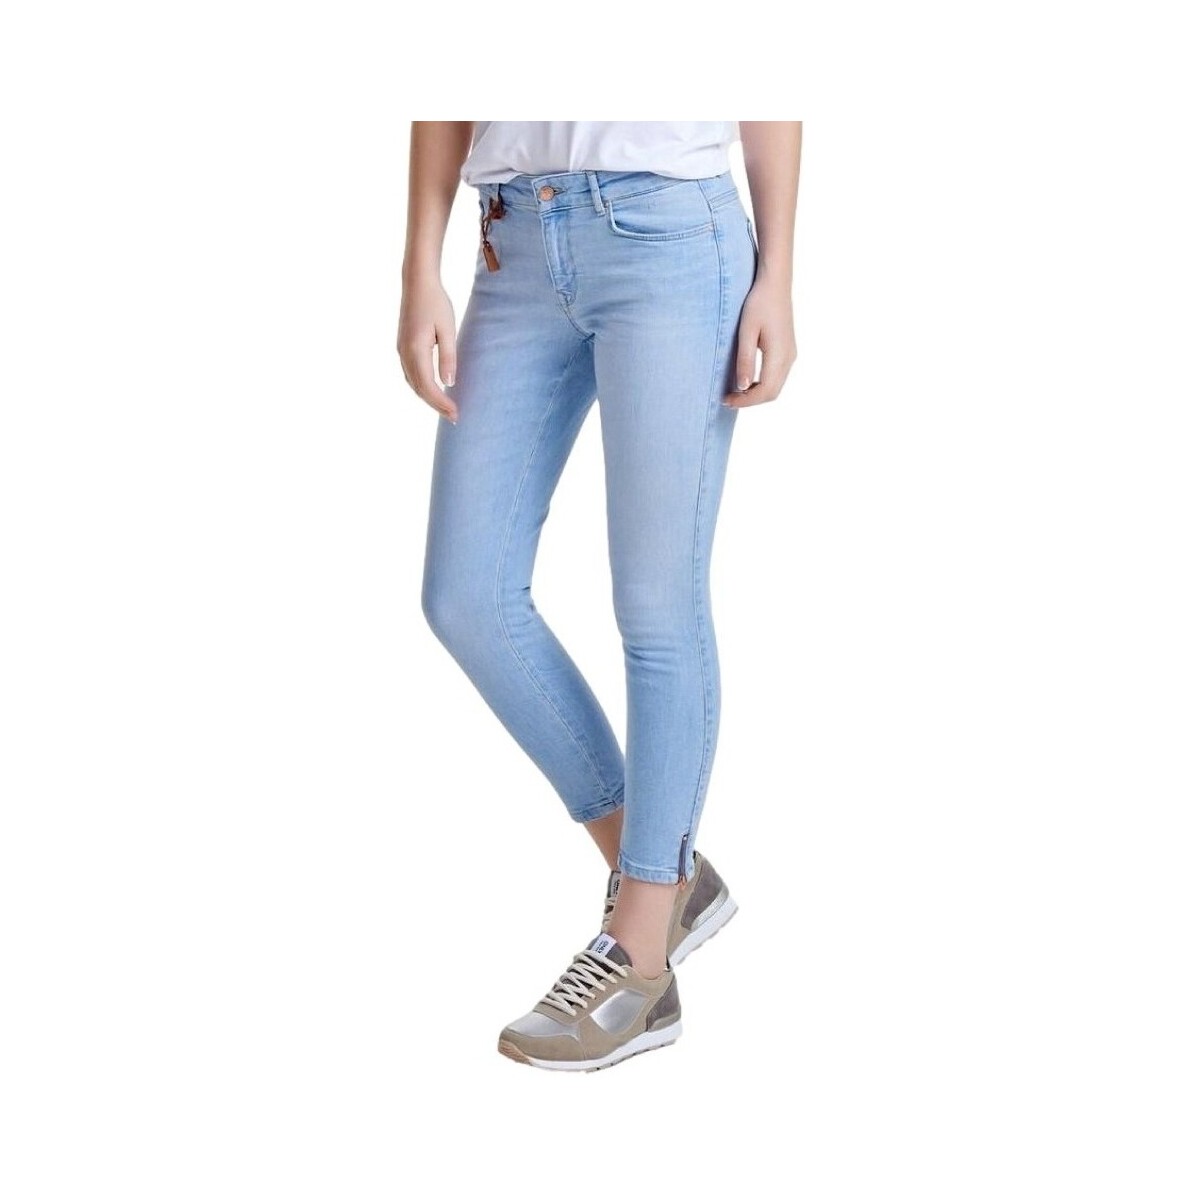 Ruhák Női Nadrágok Only Carmen Zip Regular Jeans - Blue Denim Kék